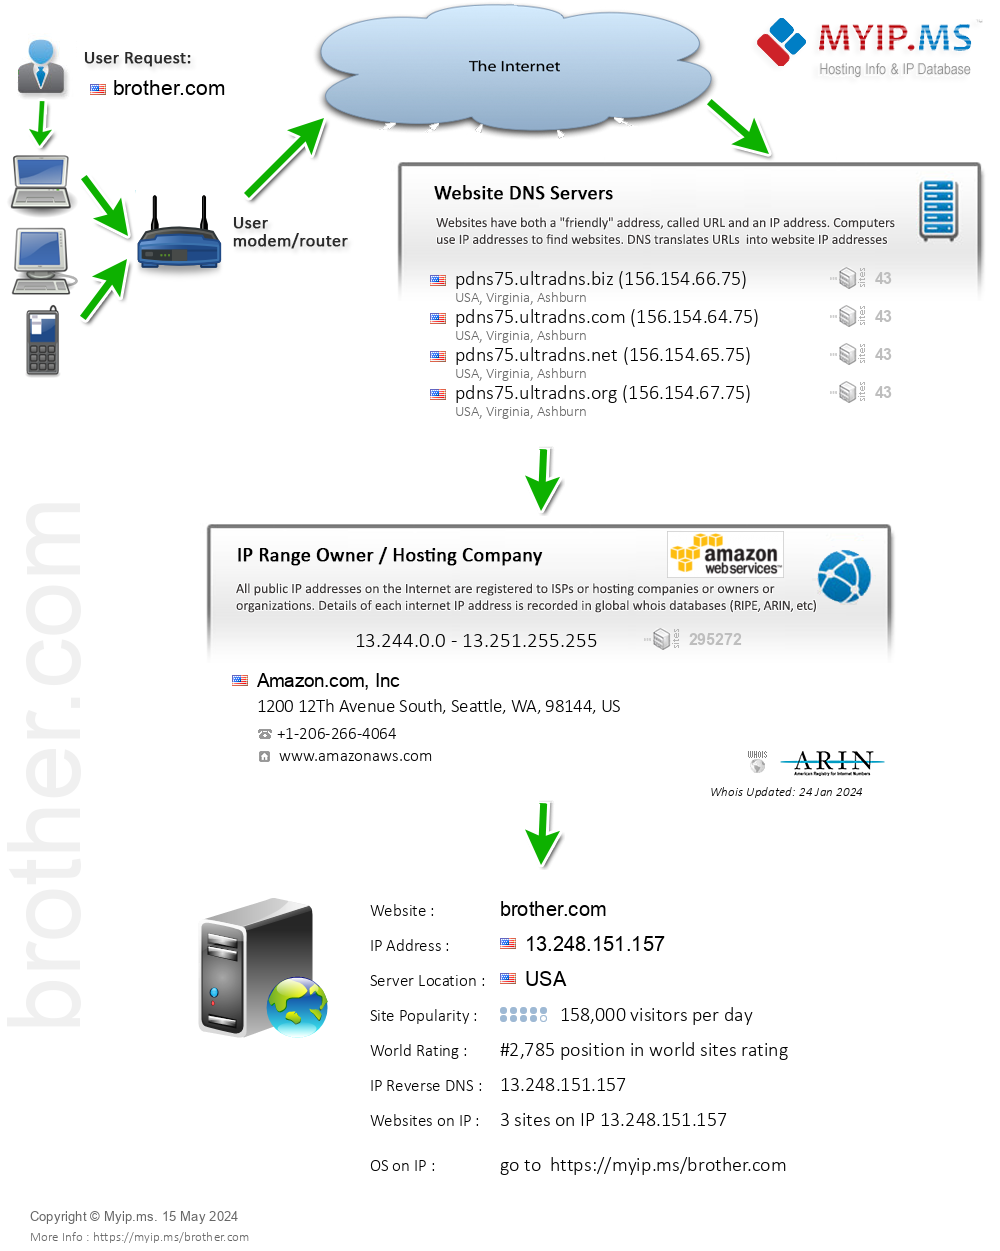 Brother.com - Website Hosting Visual IP Diagram